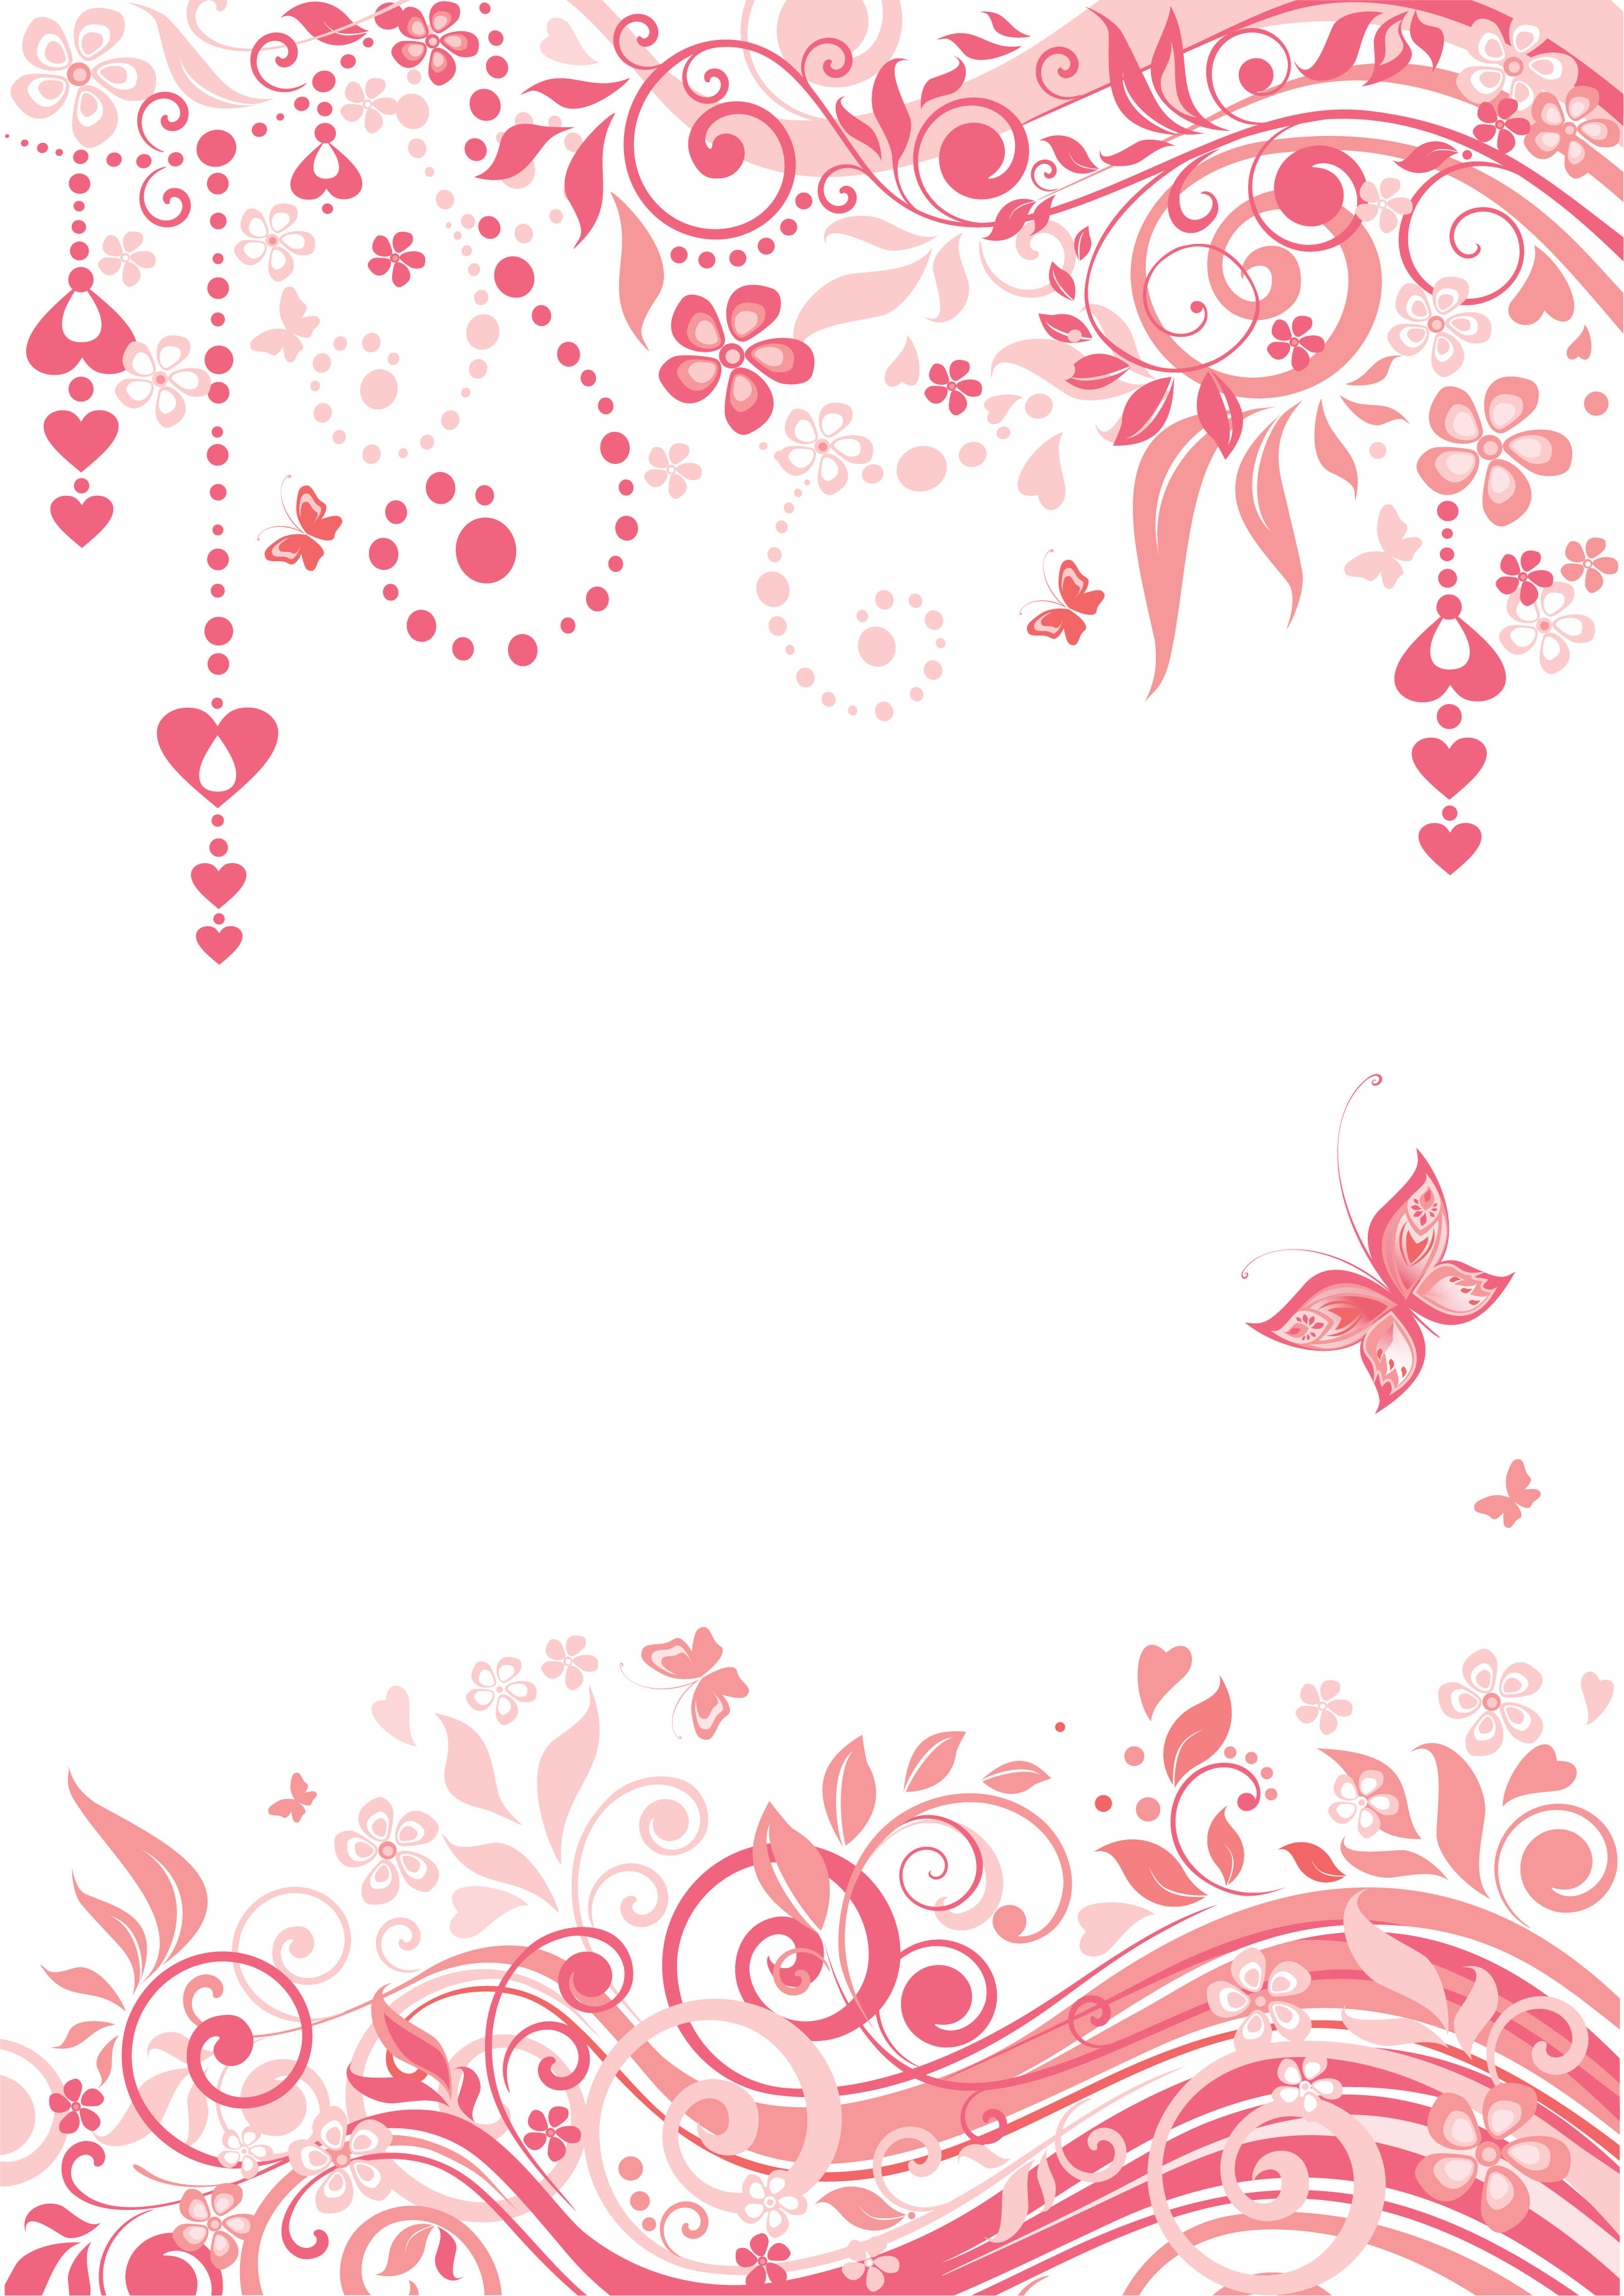 ピンクの花のイラスト フリー素材 壁紙 背景no 713 赤 ピンク ハート 蝶